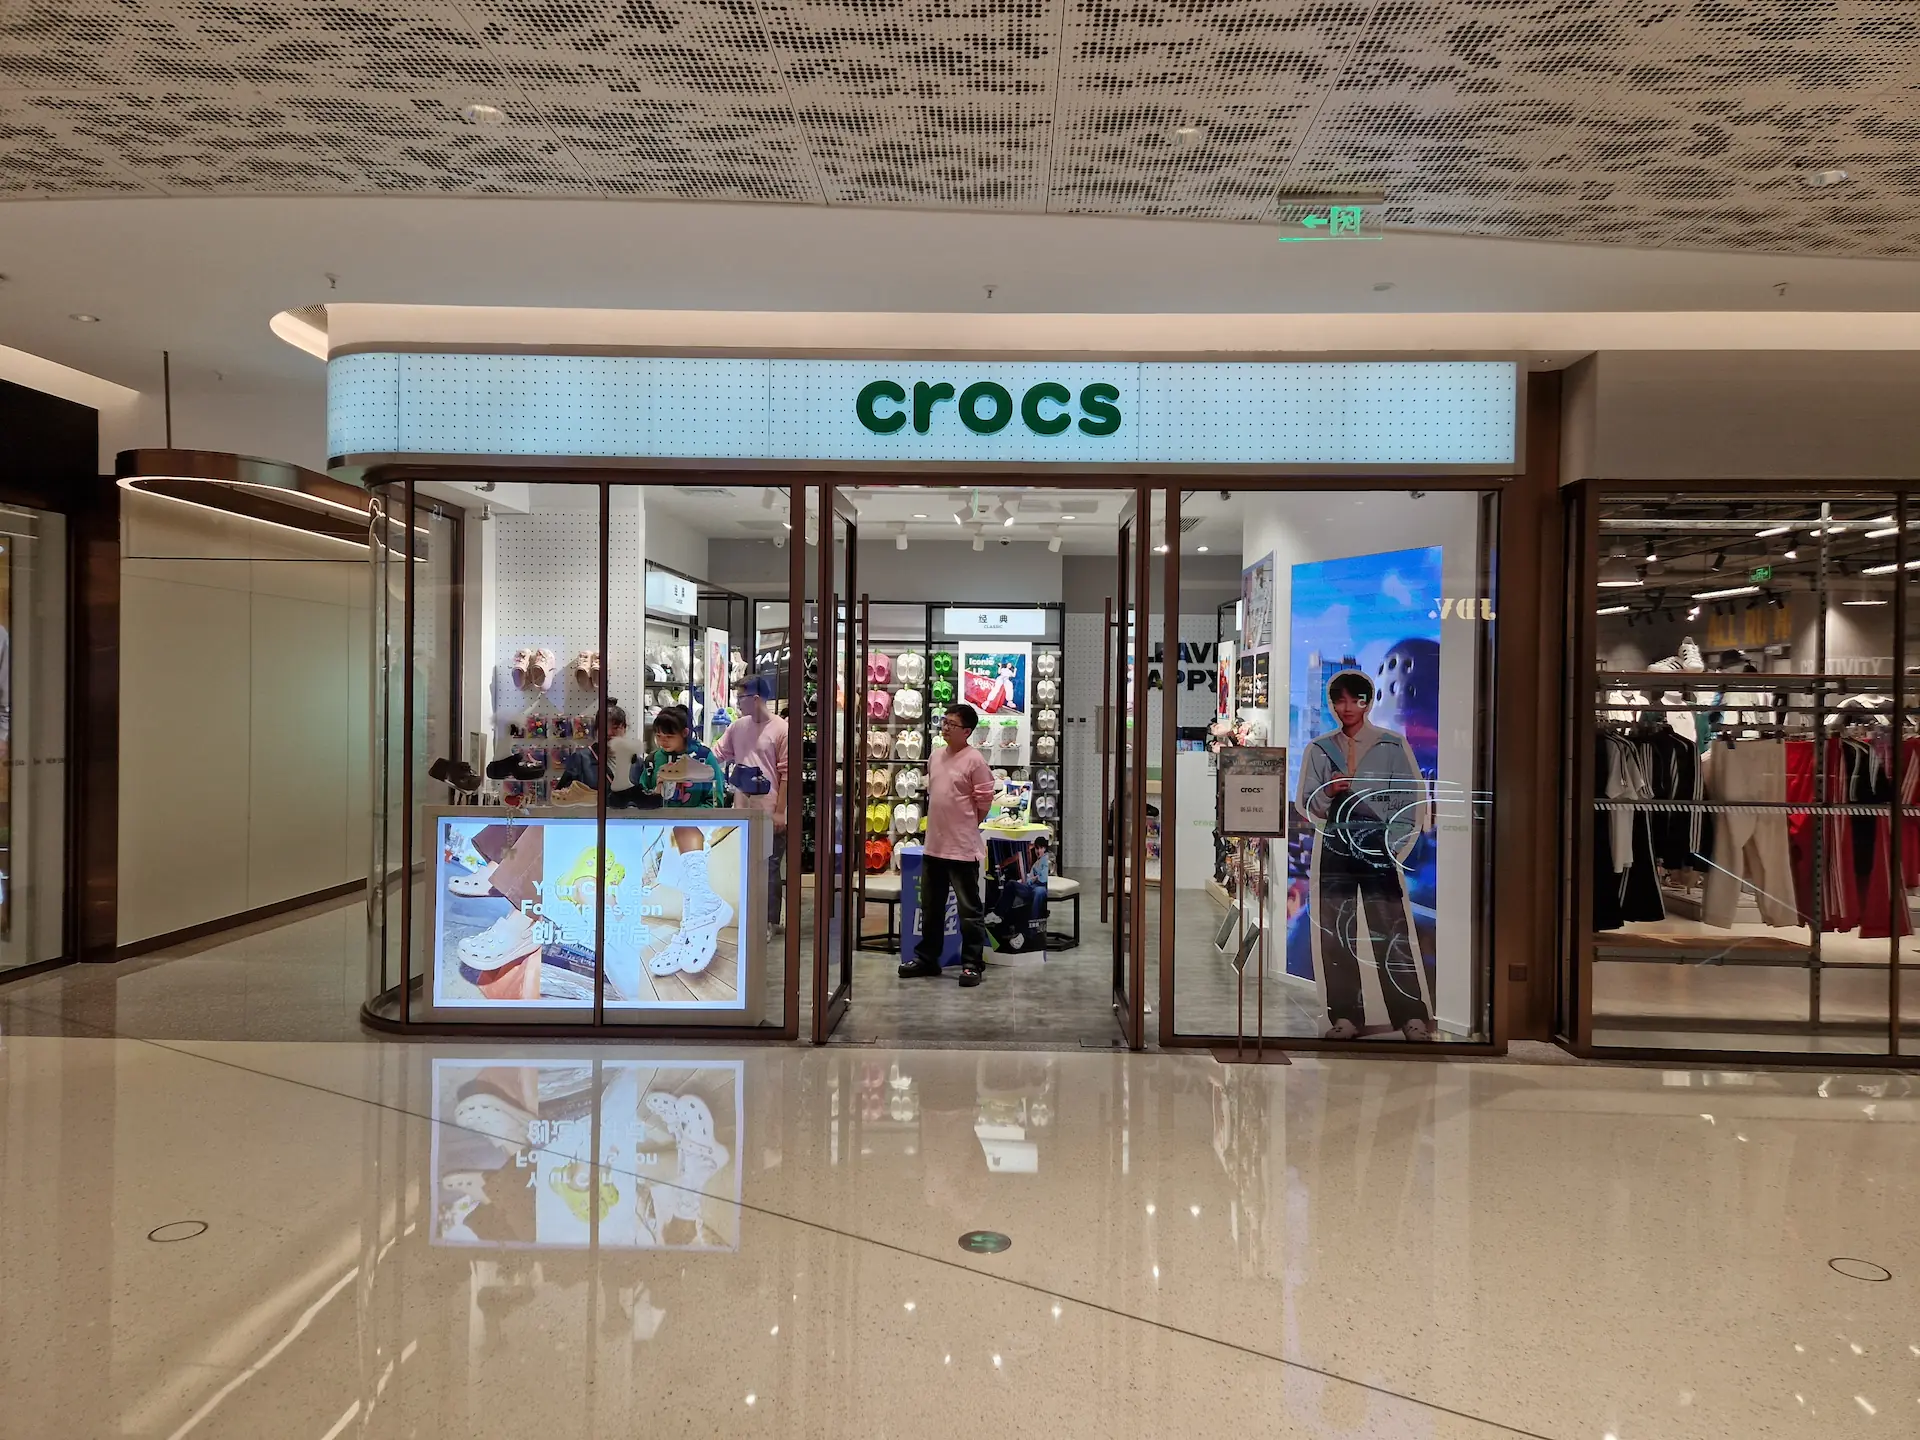 Un magasin officiel Crocs dans un mall au sol qui brille de propreté